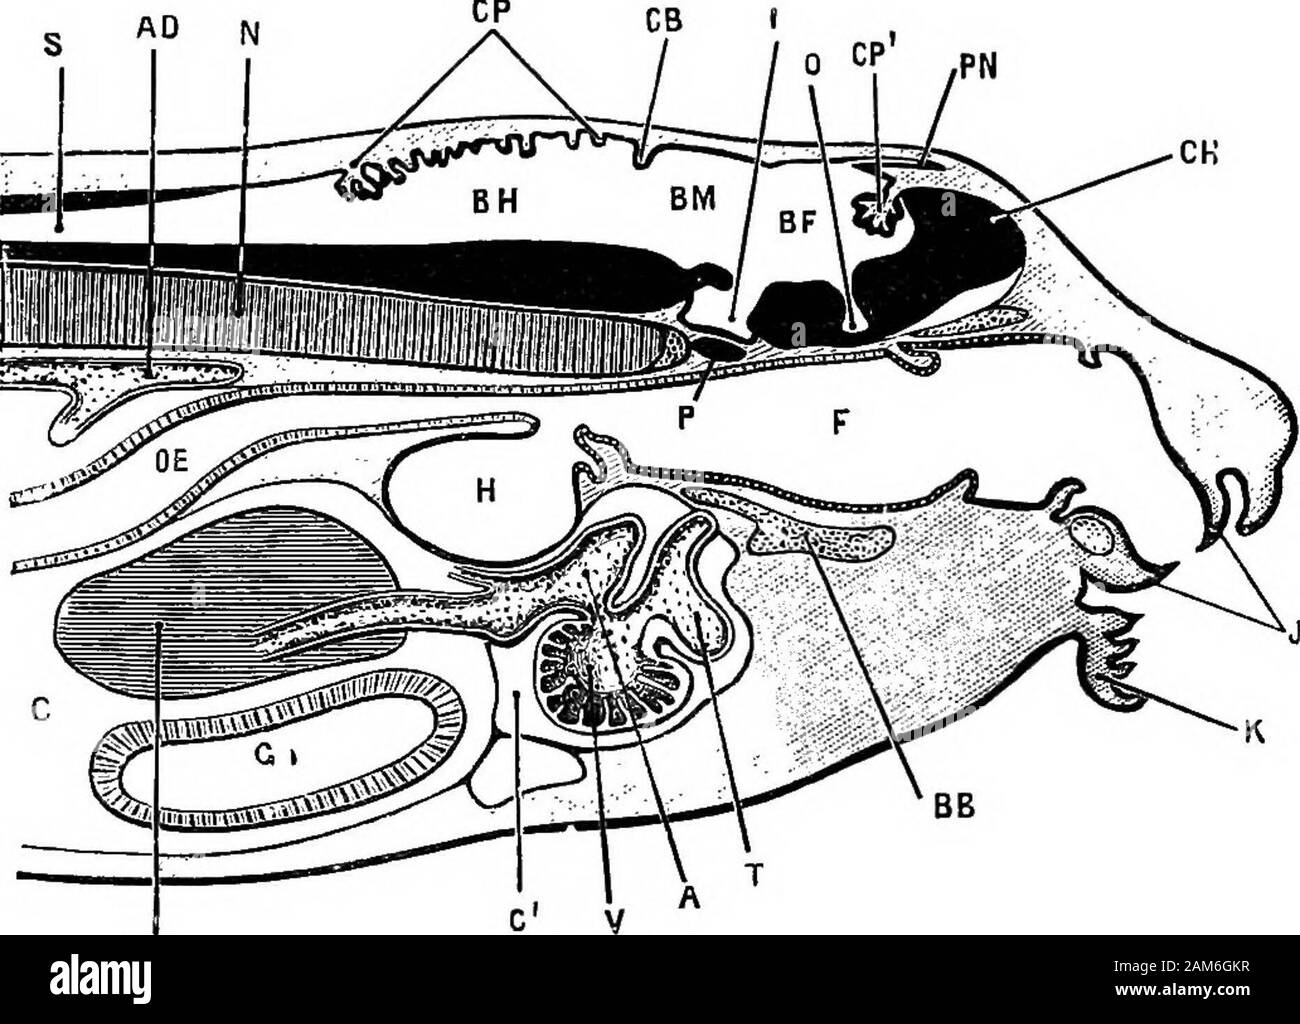 La rana: introduzione alla Anatomia, Istologia ed embriologia . -Cervello;C, cavità pericardica; CV, vescicola di emisferi cerebrali ; I, infundi-bulum ; L, fegato ; N, notochord ; 0, depressione del pavimento di fore-brainfrom cui ottica vescicole insorgono; OE, esofago; P, pituitarybody; PN, corpo pineale; S, canale centrale del midollo spinale : Così, stomo-dseum ; T, truncus arterioso ; V, ventricolo ; Y, tuorlo-celle. il midollo spinale. Il lume o cavità del tubo persiste come il canale centrale del midollo spinale e dei ventricoli del cervello. Il Cervello. Al momento della sua prima apparizione del cervello è piegato Foto Stock